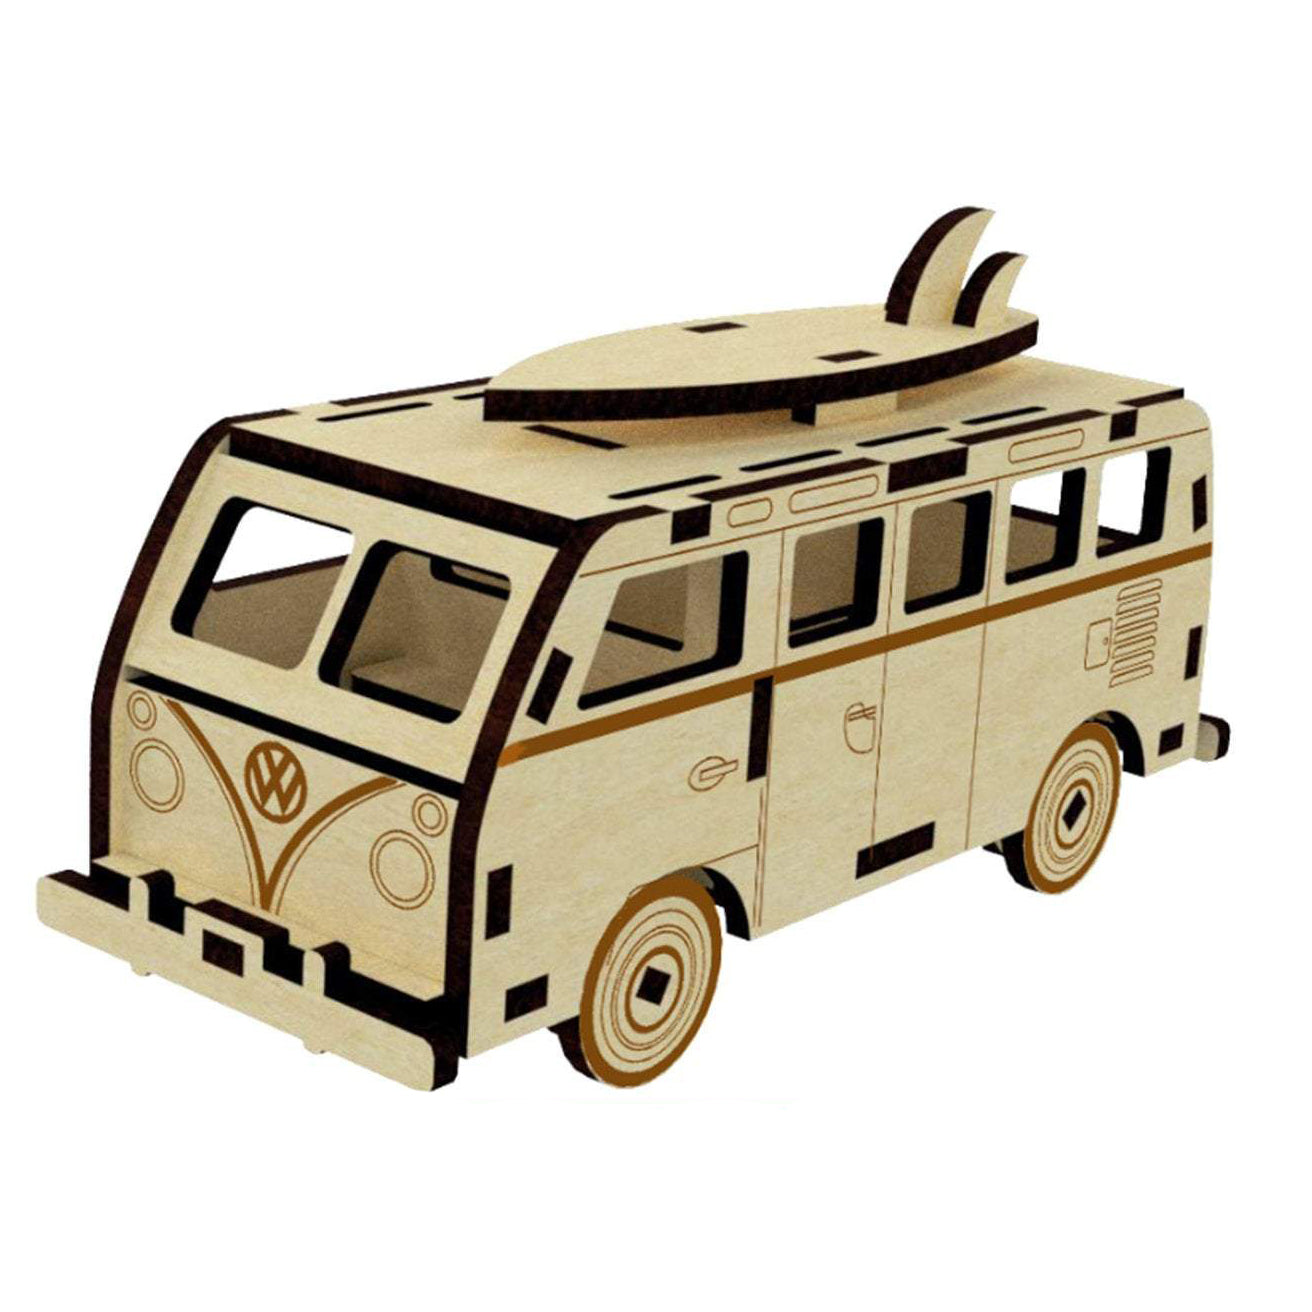 Camper Car Miniature Model